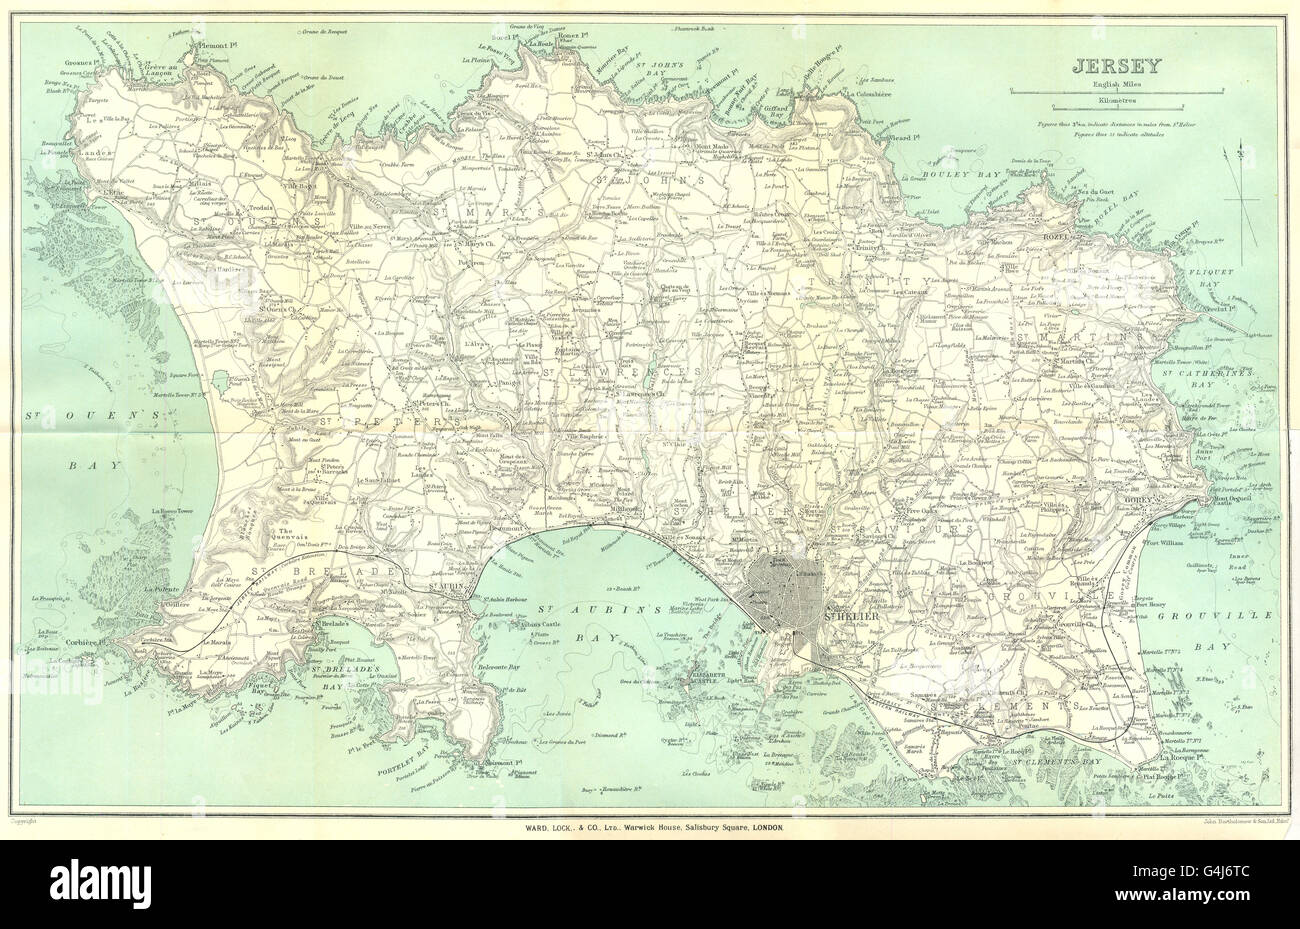 CHANNEL ISLANDS: Jersey. St Helier. WARD LOCK, 1925 vintage map Stock Photo